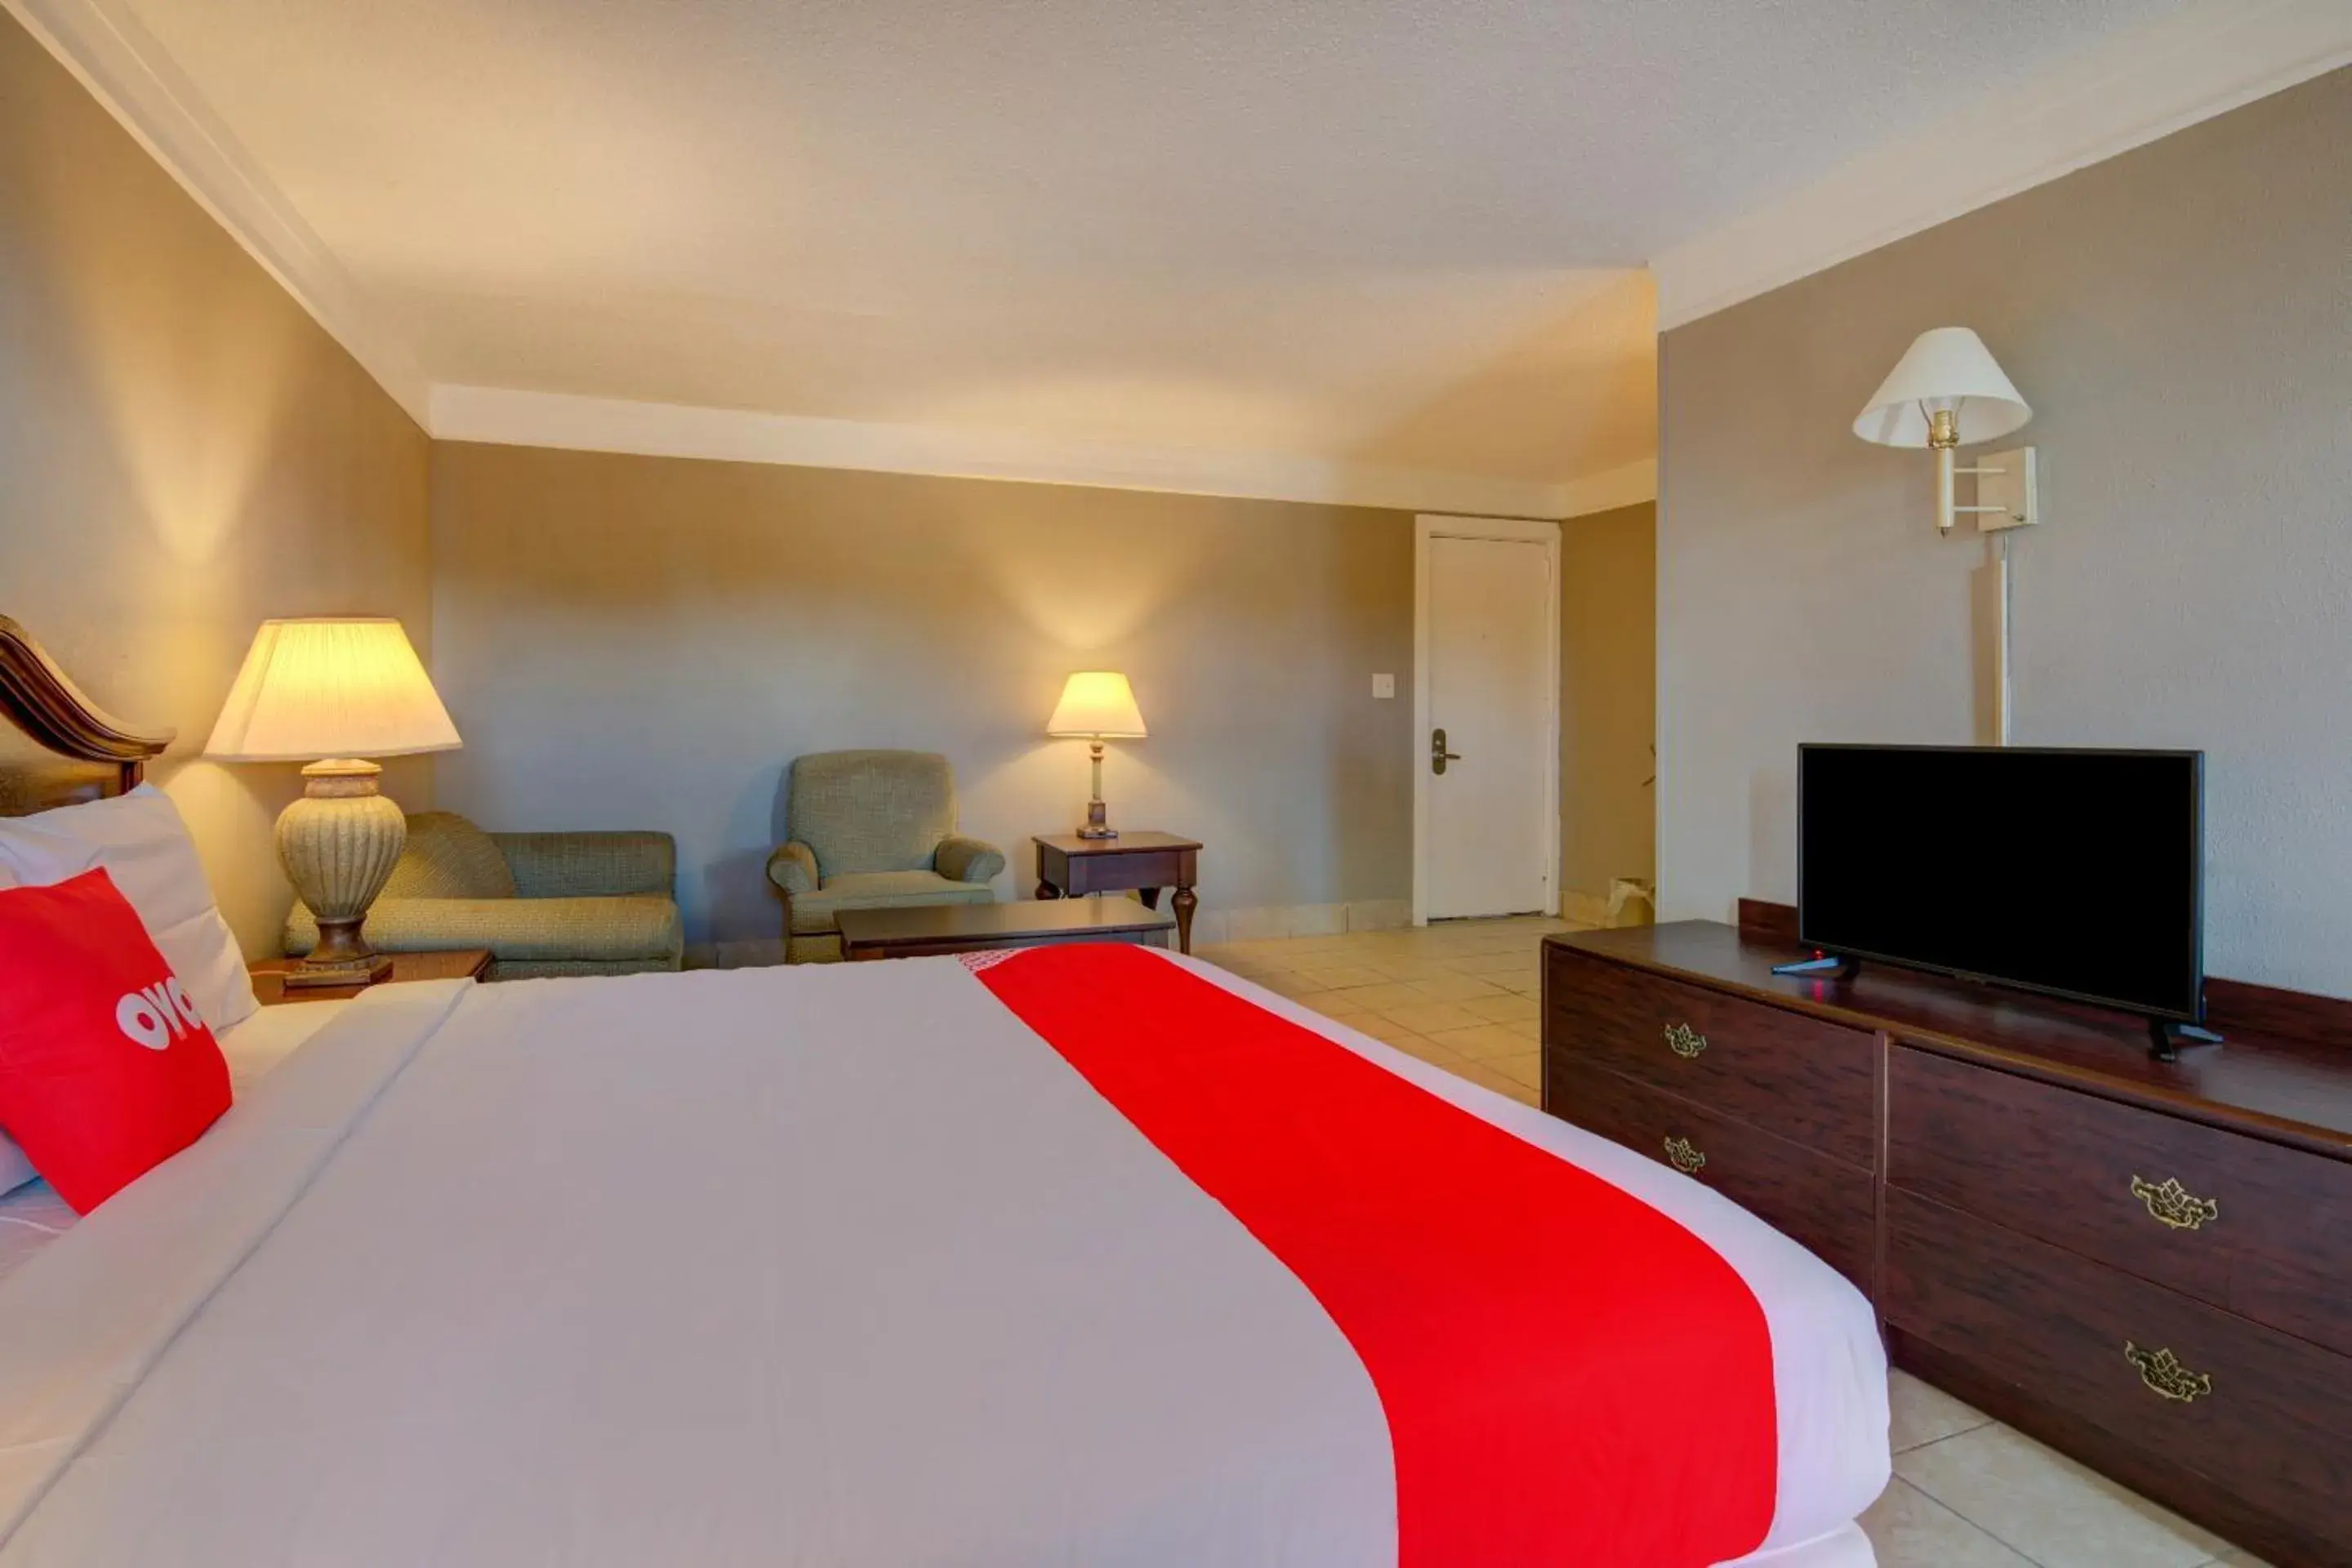 Bedroom in OYO Hotel Douglas GA US-441